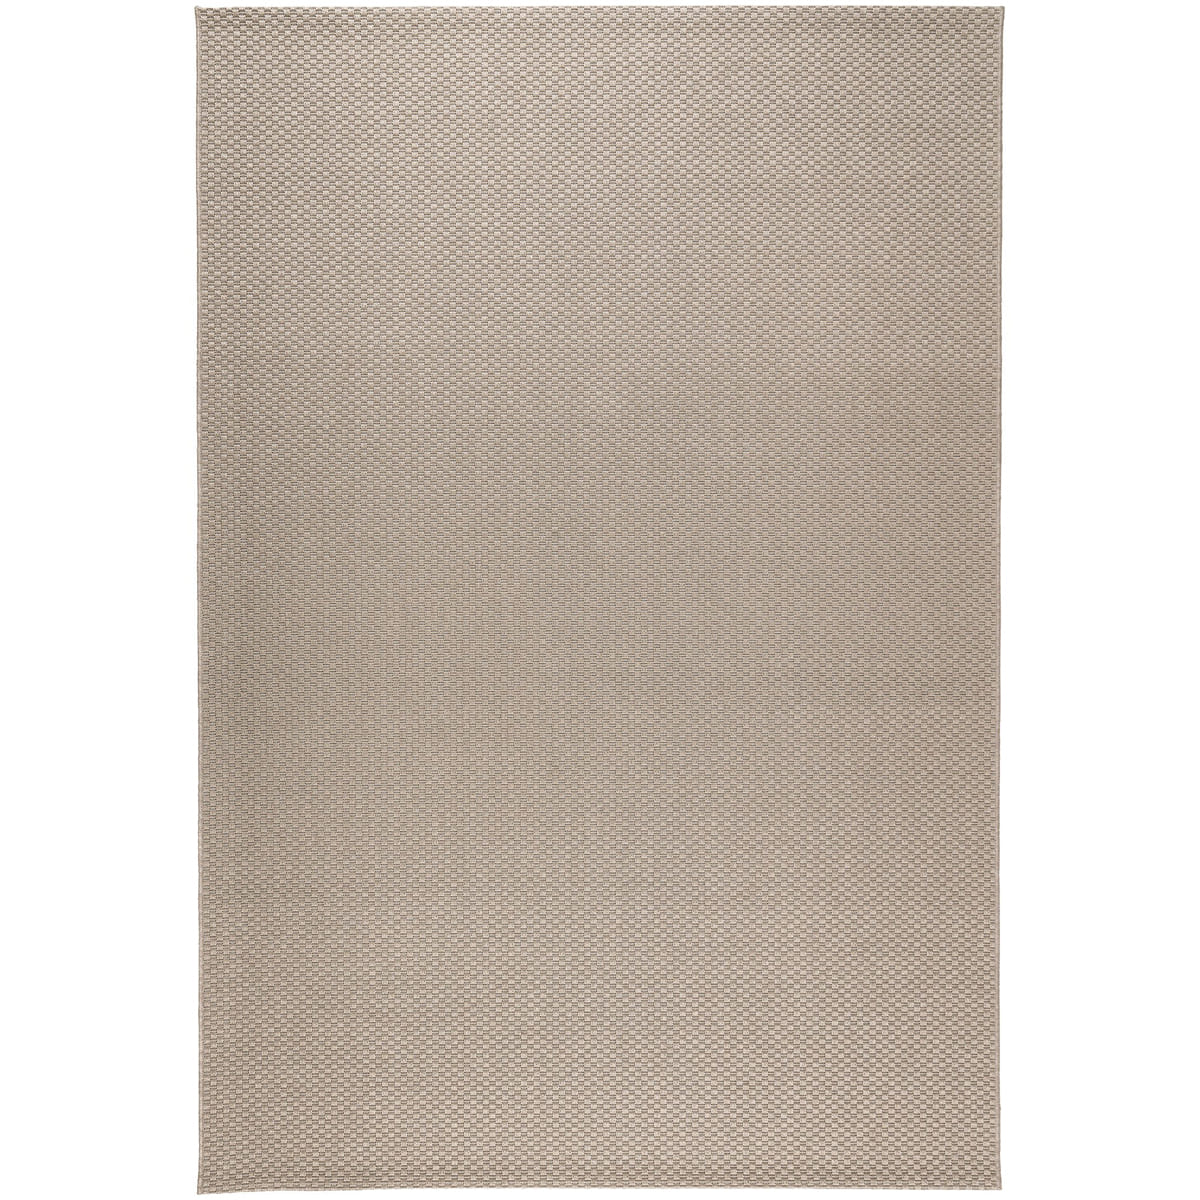 Ковер Ikea Morum 160х230 см, светло-коричневый ковер тамитекс алькантра